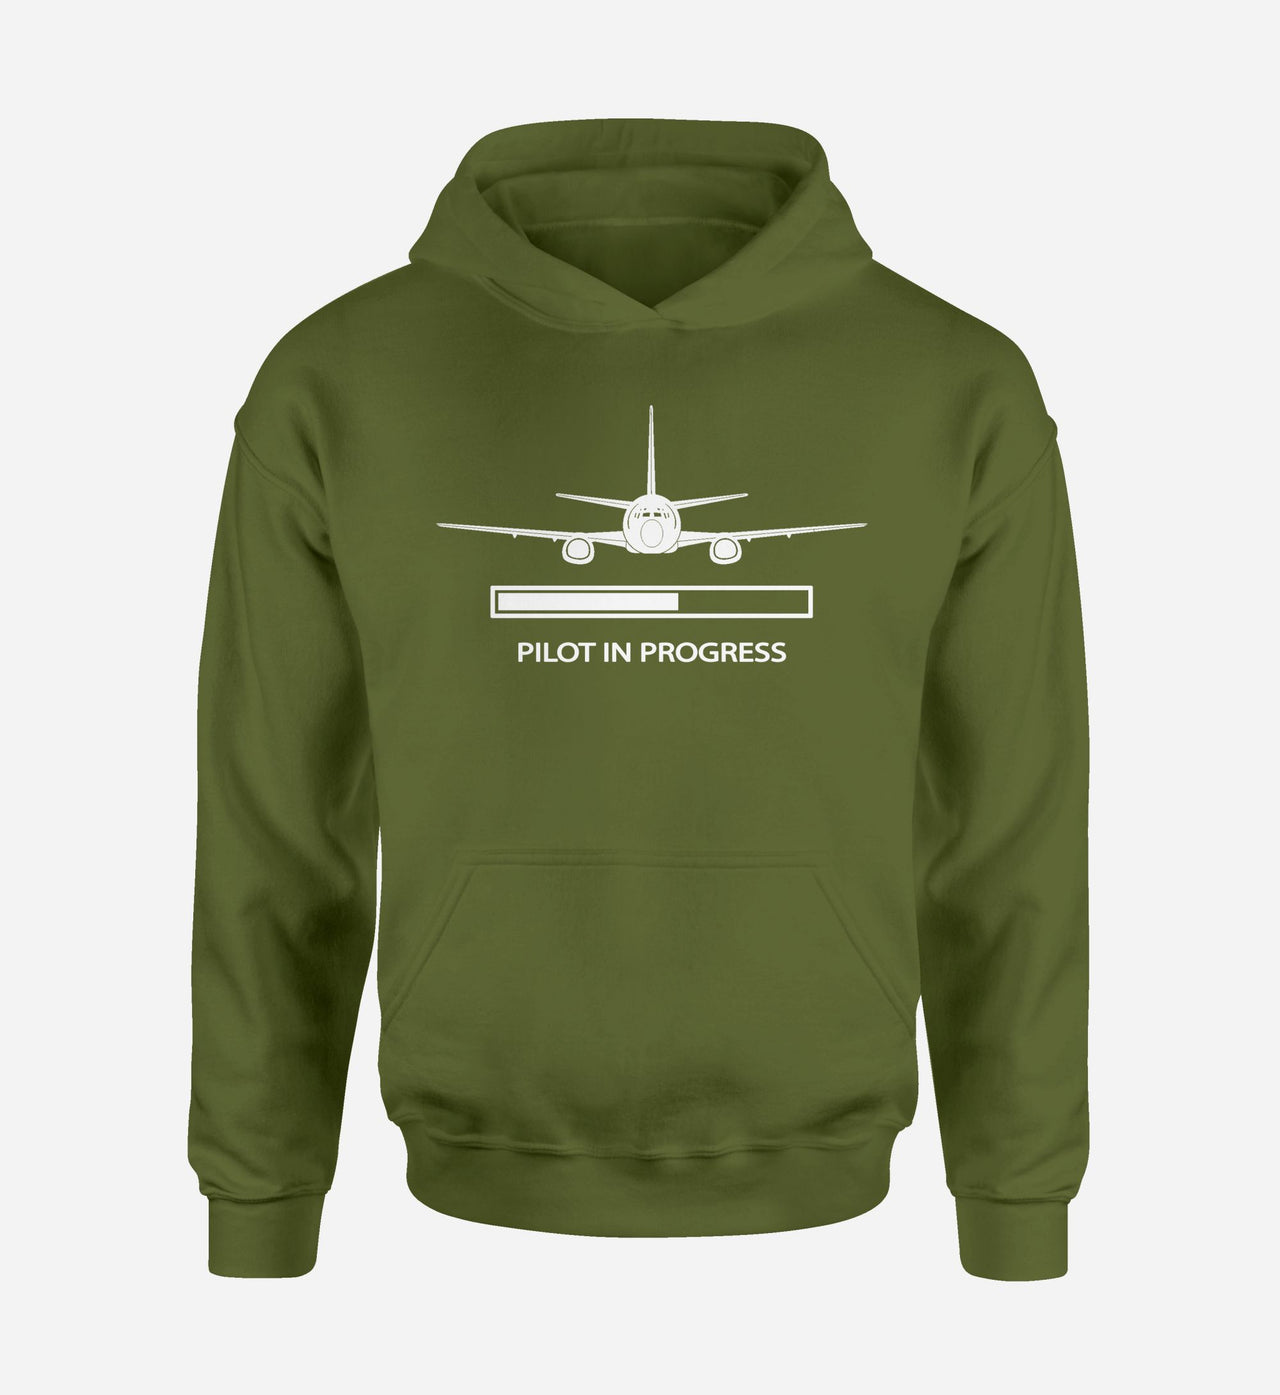 Pilot In Progress Designed Hoodies